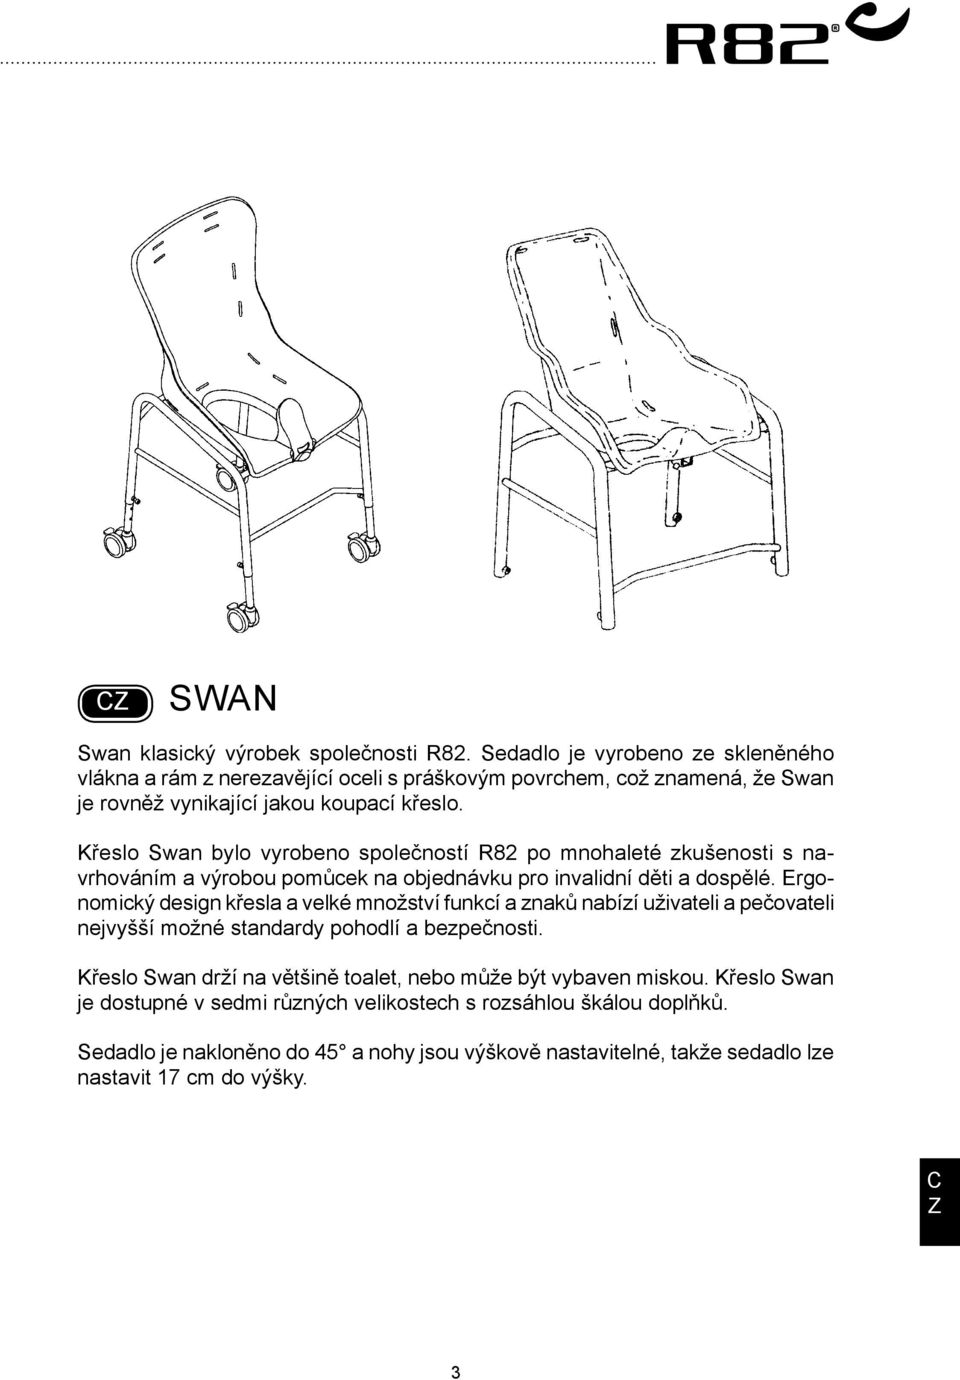 Křeslo Swan bylo vyrobeno společností R82 po mnohaleté zkušenosti s navrhováním a výrobou pomůcek na objednávku pro invalidní děti a dospělé.